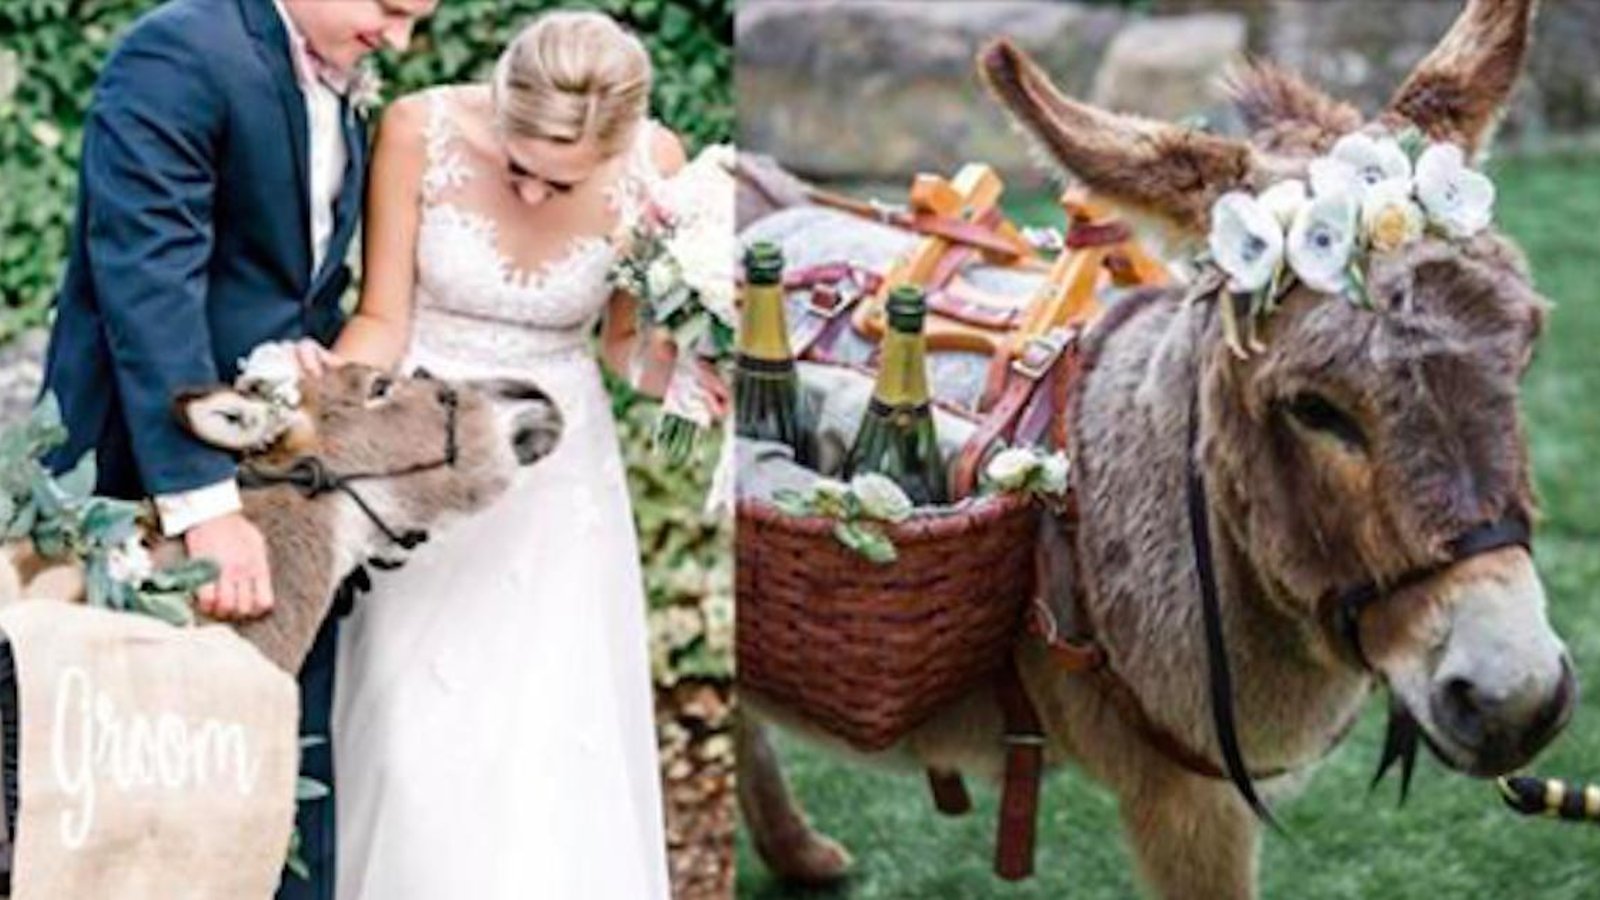 Nouvelle tendance en matière de réceptions de mariage:  des ânes miniatures qui servent les boissons!